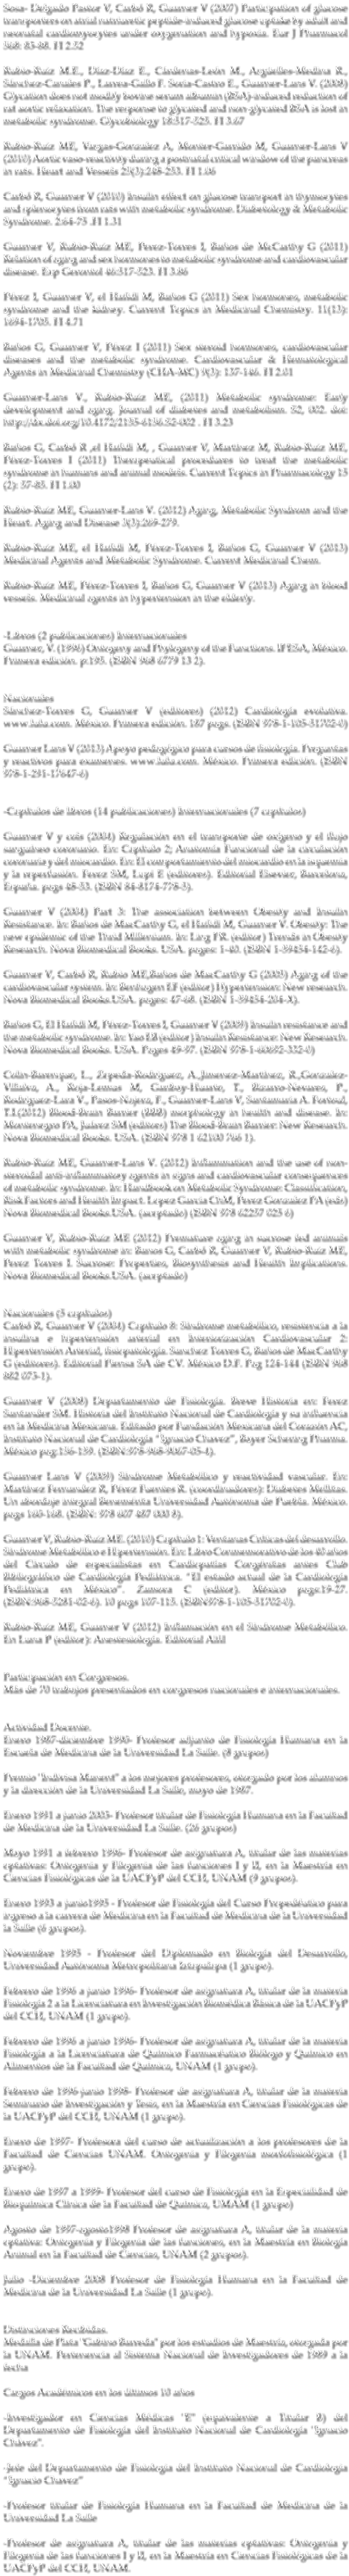 Sosa- Delgado Pastor V, Carbó R, Guarner V (2007) Participation of glucose transporters on atrial natriuretic peptide-induced glucose uptake by adult and neonatal cardiomyocytes under oxygenation and hypoxia. Eur J Pharmacol 568: 83-88. FI 2.52 Rubio-Ruiz M.E., Díaz-Díaz E., Cárdenas-León M., Argüelles-Medina R., Sánchez-Canales P., Larrea-Gallo F. Soria-Castro E., Guarner-Lans V. (2008) Glycation does not modify bovine serum albumin (BSA)-induced reduction of rat aortic relaxation. The response to glycated and non-glycated BSA is lost in metabolic syndrome. Glycobiology 18:517-525. FI 3.67 Rubio-Ruiz ME, Vargas-Gonzalez A, Monter-Garrido M, Guarner-Lans V (2010) Aortic vaso-reactivity during a postnatal critical window of the pancreas in rats. Heart and Vessels 25(3):248-253. FI 1.06 Carbó R, Guarner V (2010) Insulin effect on glucose transport in thymocytes and splenocytes from rats with metabolic syndrome. Diabetology & Metabolic Syndrome. 2:64-75 .FI 1.31 Guarner V, Rubio-Ruiz ME, Perez-Torres I, Baños de McCarthy G (2011) Relation of aging and sex hormones to metabolic syndrome and cardiovascular disease. Exp Gerontol 46:517-523. FI 3.86 Pérez I, Guarner V, el Hafidi M, Baños G (2011) Sex hormones, metabolic syndrome and the kidney. Current Topics in Medicinal Chemistry. 11(13): 1694-1705. FI 4.71 Baños G, Guarner V, Pérez I (2011) Sex steroid hormones, cardiovascular diseases and the metabolic syndrome. Cardiovascular & Hematological Agents in Medicinal Chemistry (CHA-MC) 9(3): 137-146. FI 2.01 Guarner-Lans V., Rubio-Ruiz ME, (2011) Metabolic syndrome: Early development and aging. Journal of diabetes and metabolism. S2, 002. doi: http://dx.doi.org/10.4172/2155-6156.S2-002 . FI 3.23 Baños G, Carbó R ,el Hafidi M, , Guarner V, Martínez M, Rubio-Ruiz ME, Pérez-Torres I (2011) Therapeutical procedures to treat the metabolic syndrome in humans and animal models. Current Topics in Pharmacology 15 (2): 57-85. FI 1.00 Rubio-Ruiz ME, Guarner-Lans V. (2012) Aging, Metabolic Syndrom and the Heart. Aging and Disease 3(3):269-279. Rubio-Ruiz ME, el Hafidi M, Pérez-Torres I, Baños G, Guarner V (2013) Medicinal Agents and Metabolic Syndrome. Current Medicinal Chem. Rubio-Ruiz ME, Pérez-Torres I, Baños G, Guarner V (2013) Aging in blood vessels. Medicinal agents in hypertension in the elderly. -Libros (2 publicaciones) Internacionales Guarner, V. (1996) Ontogeny and Phylogeny of the Functions. IPESA, México. Primera edición. p:195. (ISBN 968 6779 13 2). Nacionales Sánchez-Torres G, Guarner V (editores) (2012) Cardiología evolutiva. www.lulu.com. México. Primera edición. 187 pags. (ISBN 978-1-105-51702-0) Guarner Lans V (2013) Apoyo pedagógico para cursos de fisiología. Preguntas y reactivos para examenes. www.lulu.com. México. Primera edición. (ISBN 978-1-291-17647-6) -Capítulos de libros (14 publicaciones) Internacionales (7 capítulos) Guarner V y cols (2004) Regulación en el transporte de oxígeno y el flujo sanguíneo coronario. En: Capítulo 2; Anatomía Funcional de la circulación coronaria y del miocardio. En: El comportamiento del miocardio en la isquemia y la reperfusión. Ferez SM, Lupi E (editores). Editorial Elsevier, Barcelona, España. pags 48-53. (ISBN 84-8174-778-5). Guarner V (2004) Part 3: The association between Obesity and Insulin Resistance. In: Baños de MacCarthy G, el Hafidi M, Guarner V. Obesity: The new epidemic of the Thrid Millenium. In: Ling PR. (editor) Trends in Obesity Research. Nova Biomedical Books. USA. pages: 1-40. (ISBN 1-59454-142-6). Guarner V, Carbó R, Rubio ME,Baños de MacCarthy G (2005) Aging of the cardiovascular system. In: Benhagen EF (editor) Hypertension: New research. Nova Biomedical Books.USA. pages: 47-68. (ISBN 1-59454-204-X). Baños G, El Hafidi M, Pérez-Torres I, Guarner V (2009) Insulin resistance and the metabolic syndrome. In: Yao EB (editor) Insulin Resistance: New Research. Nova Biomedical Books. USA. Pages 49-97. (ISBN 978-1-60692-332-0) Colin-Barenque, L., Zepeda-Rodriguez, A.,Jimenez-Martínez, R.,Gonzalez-Villalva, A., Roja-Lemus M, Garibay-Huarte, T., Bizarro-Nevares, P., Rodriguez-Lara V., Pasos-Najera, F., Guarner-Lans V, Santamaria A. Fortoul, T.I.(2012) Blood-Brain Barrier (BBB) morphology in health and disease. In: Montenegro PA, Juárez SM (editors) The Blood-Brain Barrier: New Research. Nova Biomedical Books. USA. (ISBN 978 1 62100 766 1). Rubio-Ruiz ME, Guarner-Lans V. (2012) Inflammation and the use of non-steroidal anti-inflammatory agents in signs and cardiovascular consequences of metabolic syndrome. In: Handbook on Metabolic Syndrome: Classification, Risk Factors and Health Impact. Lopez Garcia ChM, Perez Gonzalez PA (eds) Nova Biomedical Books.USA. (aceptado) (ISBN 978 62257 025 6) Guarner V, Rubio-Ruiz ME (2012) Premature aging in sucrose fed animals with metabolic syndrome in: Banos G, Carbó R, Guarner V, Rubio-Ruiz ME, Perez Torres I. Sucrose: Properties, Biosynthesis and Health Implications. Nova Biomedical Books.USA. (aceptado) Nacionales (5 capítulos) Carbó R, Guarner V (2004) Capítulo 8: Síndrome metabólico, resistencia a la insulina e hipertensión arterial en Interiorización Cardiovascular 2: Hipertensión Arterial, fisiopatología. Sanchez Torres G, Baños de MacCarthy G (editores). Editorial Piensa SA de CV. México D.F. Pag 124-144 (ISBN 968 882 073-1). Guarner V (2008) Departamento de Fisiología. Breve Historia en: Ferez Santander SM. Historia del Instituto Nacional de Cardiología y su influencia en la Medicina Mexicana. Editado por Fundación Mexicana del Corazón AC, Instituto Nacional de Cardiología “Ignacio Chavez”, Bayer Schering Pharma. México pag:156-159. (ISBN:978-968-9067-05-4). Guarner Lans V (2009) Síndrome Metabólico y reactividad vascular. En: Martínez Fernandez R, Pérez Fuentes R. (coordinadores): Diabetes Mellitas. Un abordaje integral Benemérita Universidad Autónoma de Puebla. México. pags 160-168. (ISBN: 978 607 487 000 8). Guarner V, Rubio-Ruiz ME. (2010) Capítulo 1: Ventanas Críticas del desarrollo. Síndrome Metabólico e Hipertensión. En: Libro Conmemorativo de los 40 años del Círculo de especialistas en Cardiopatías Congénitas antes Club Bibliográfico de Cardiología Pediátrica. “El estado actual de la Cardiología Pediátrica en México”. Zamora C (editor). México pags:19-27. (ISBN:968-5281-02-6). 10 pags 107-115. (ISBN978-1-105-51702-0). Rubio-Ruiz ME, Guarner V (2012) Inflamación en el Síndrome Metabólico. En Luna P (editor): Anestesiología. Editorial Alfil Participación en Congresos. Más de 70 trabajos presentados en congresos nacionales e internacionales. Actividad Docente. Enero 1987-diciembre 1990- Profesor adjunto de Fisiología Humana en la Escuela de Medicina de la Universidad La Salle. (8 grupos) Premio "Indivisa Manent" a los mejores profesores, otorgado por los alumnos y la dirección de la Universidad La Salle, mayo de 1987. Enero 1991 a junio 2003- Profesor titular de Fisiología Humana en la Facultad de Medicina de la Universidad La Salle. (26 grupos) Mayo 1991 a febrero 1996- Profesor de asignatura A, titular de las materias optativas: Ontogenia y Filogenia de las funciones I y II, en la Maestría en Ciencias Fisiológicas de la UACPyP del CCH, UNAM (9 grupos). Enero 1993 a junio1995 - Profesor de Fisiología del Curso Propedéutico para ingreso a la carrera de Medicina en la Facultad de Medicina de la Universidad la Salle (6 grupos). Noviembre 1995 - Profesor del Diplomado en Biología del Desarrollo, Universidad Autónoma Metropolitana Iztapalapa (1 grupo). Febrero de 1996 a junio 1996- Profesor de asignatura A, titular de la materia Fisiología 2 a la Licenciatura en Investigación Biomédica Básica de la UACPyP del CCH, UNAM (1 grupo). Febrero de 1996 a junio 1996- Profesor de asignatura A, titular de la materia Fisiología a la Licenciatura de Químico Farmacéutico Biólogo y Químico en Alimentos de la Facultad de Química, UNAM (1 grupo). Febrero de 1996-junio 1998- Profesor de asignatura A, titular de la materia Seminario de Investigación y Tesis, en la Maestría en Ciencias Fisiológicas de la UACPyP del CCH, UNAM (1 grupo). Enero de 1997- Profesora del curso de actualización a los profesores de la Facultad de Ciencias UNAM. Ontogenia y Filogenia morfofisiológica (1 grupo). Enero de 1997 a 1999- Profesor del curso de Fisiología en la Especialidad de Bioquímica Clínica de la Facultad de Química, UMAM (1 grupo) Agosto de 1997-agosto1998 Profesor de asignatura A, titular de la materia optativa: Ontogenia y Filogenia de las funciones, en la Maestría en Biología Animal en la Facultad de Ciencias, UNAM (2 grupos). Julio -Diciembre 2008 Profesor de Fisiología Humana en la Facultad de Medicina de la Universidad La Salle (1 grupo). Distinciones Recibidas. Medalla de Plata "Gabino Barreda" por los estudios de Maestría, otorgada por la UNAM. Pertenencia al Sistema Nacional de Investigadores de 1989 a la fecha Cargos Académicos en los últimos 10 años -Investigador en Ciencias Médicas "E" (equivalente a Titular B) del Departamento de Fisiología del Instituto Nacional de Cardiología "Ignacio Chávez". -Jefe del Departamento de Fisiologia del Instituto Nacional de Cardiologia “Ignacio Chavez” -Profesor titular de Fisiología Humana en la Facultad de Medicina de la Universidad La Salle -Profesor de asignatura A, titular de las materias optativas: Ontogenia y Filogenia de las funciones I y II, en la Maestría en Ciencias Fisiológicas de la UACPyP del CCH, UNAM.